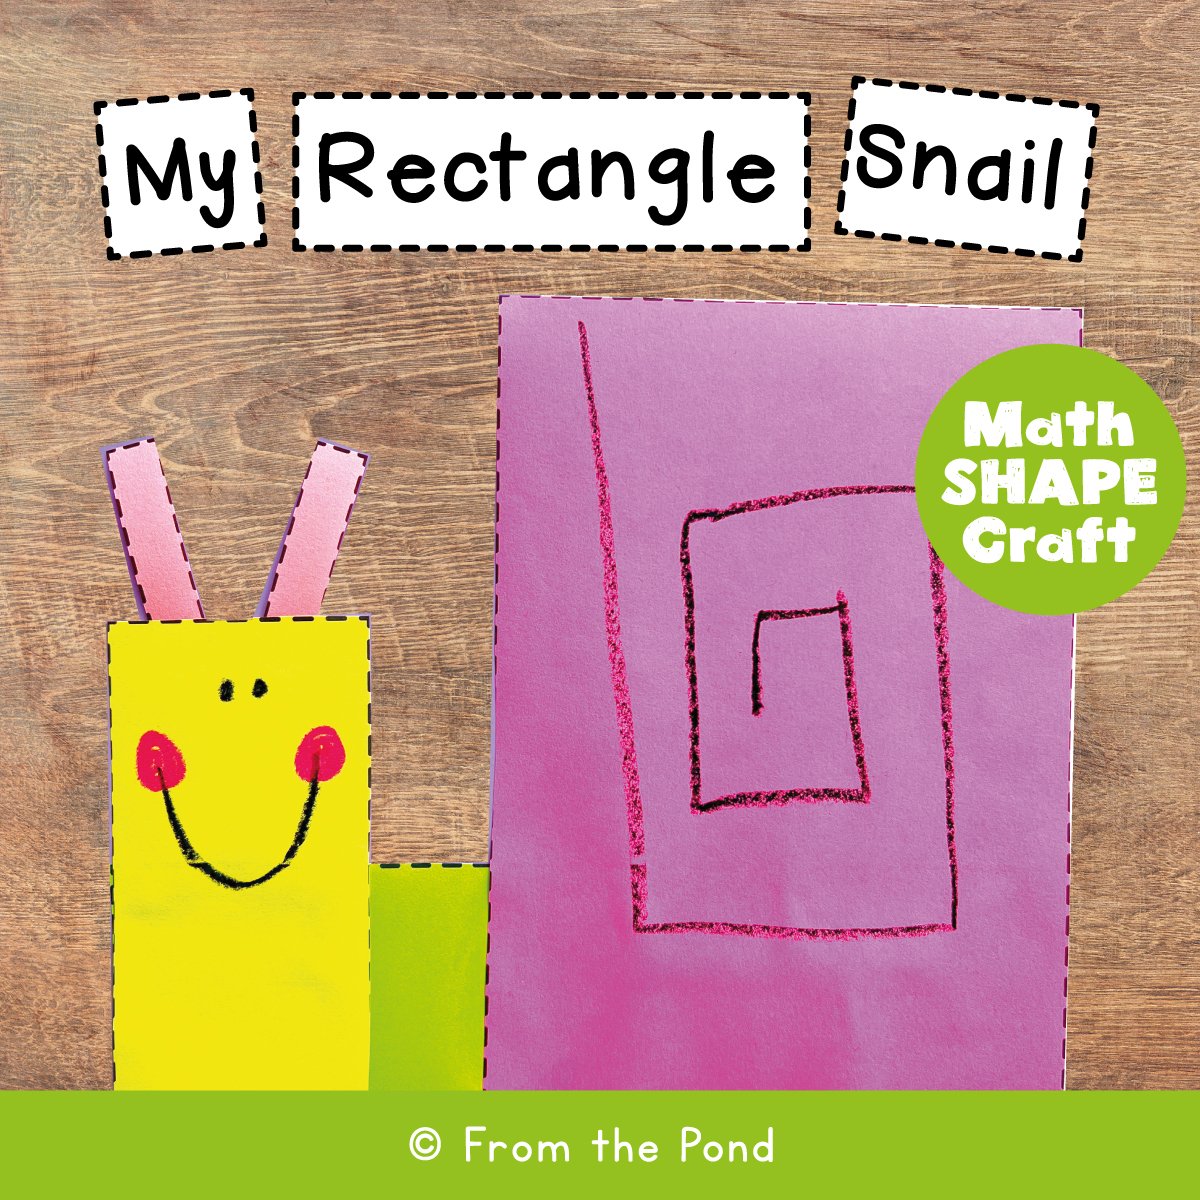 rectangle-snail.jpg